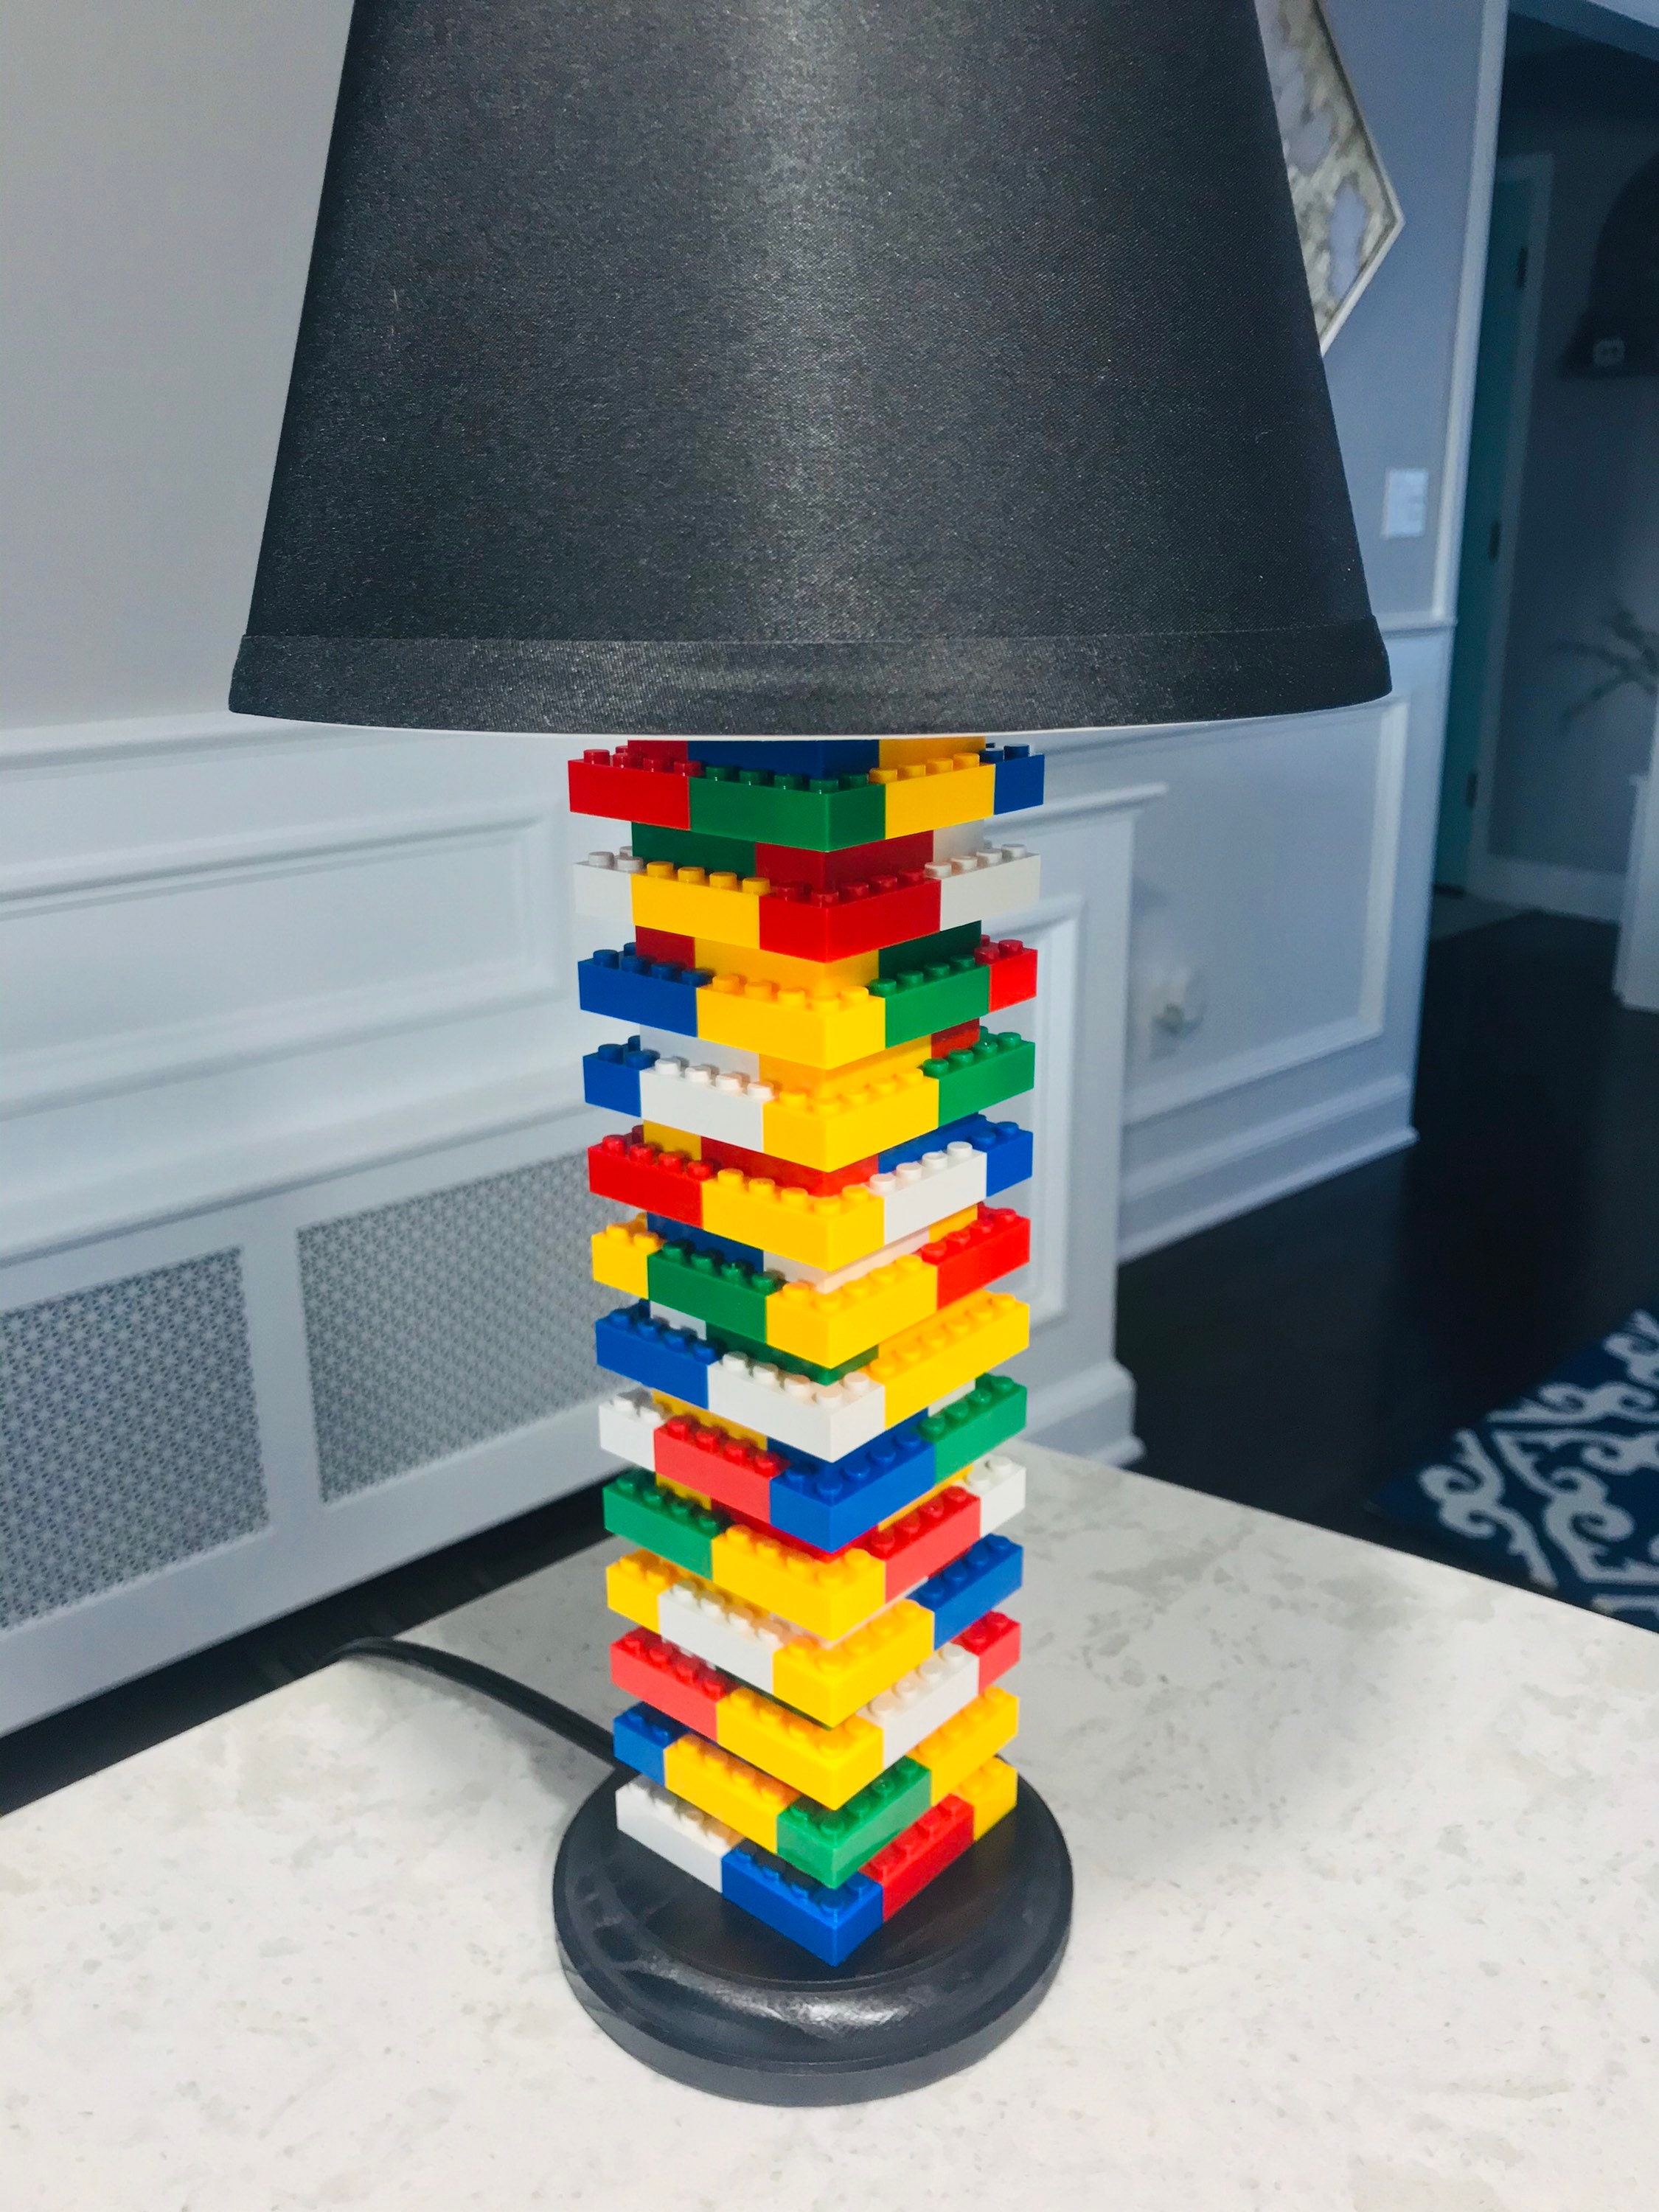 4.0 Lamp Made of Bricks | Etsy